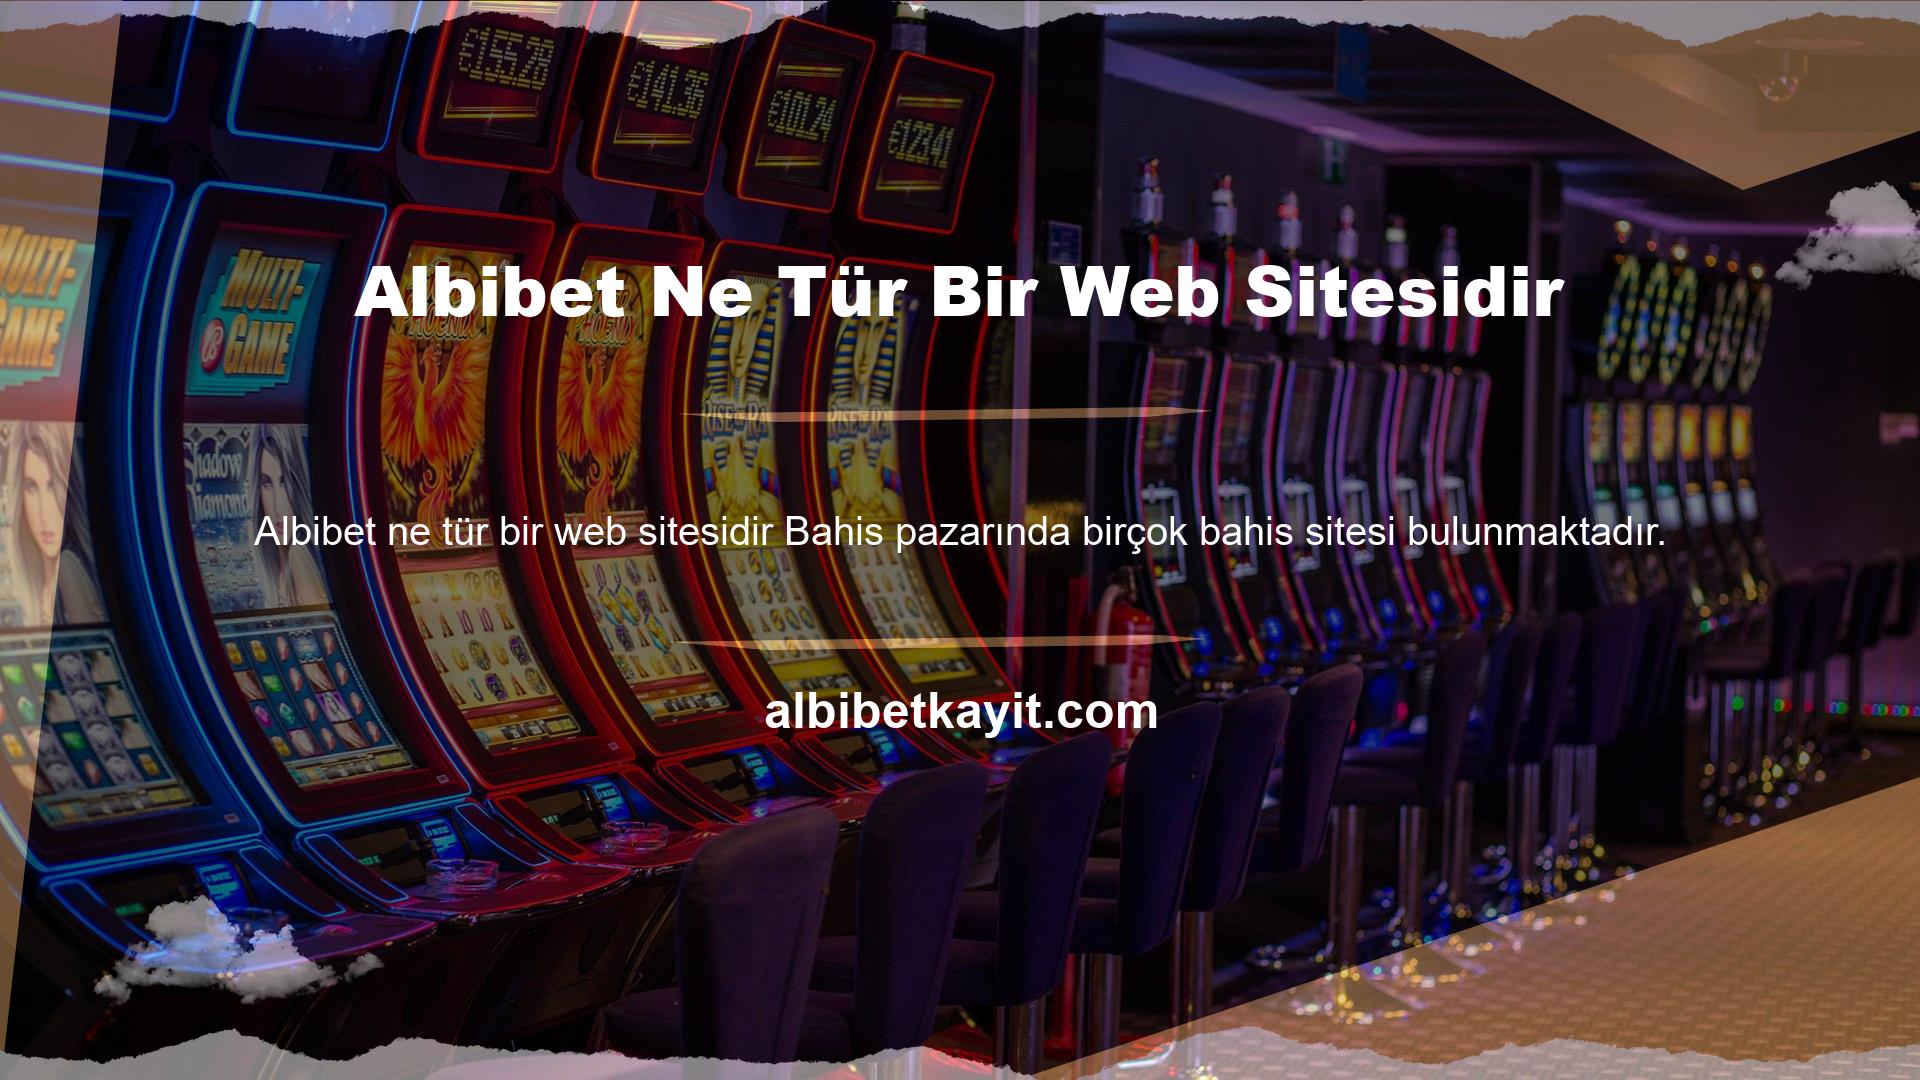 Albibet Ne Tür Bir Web Sitesidir